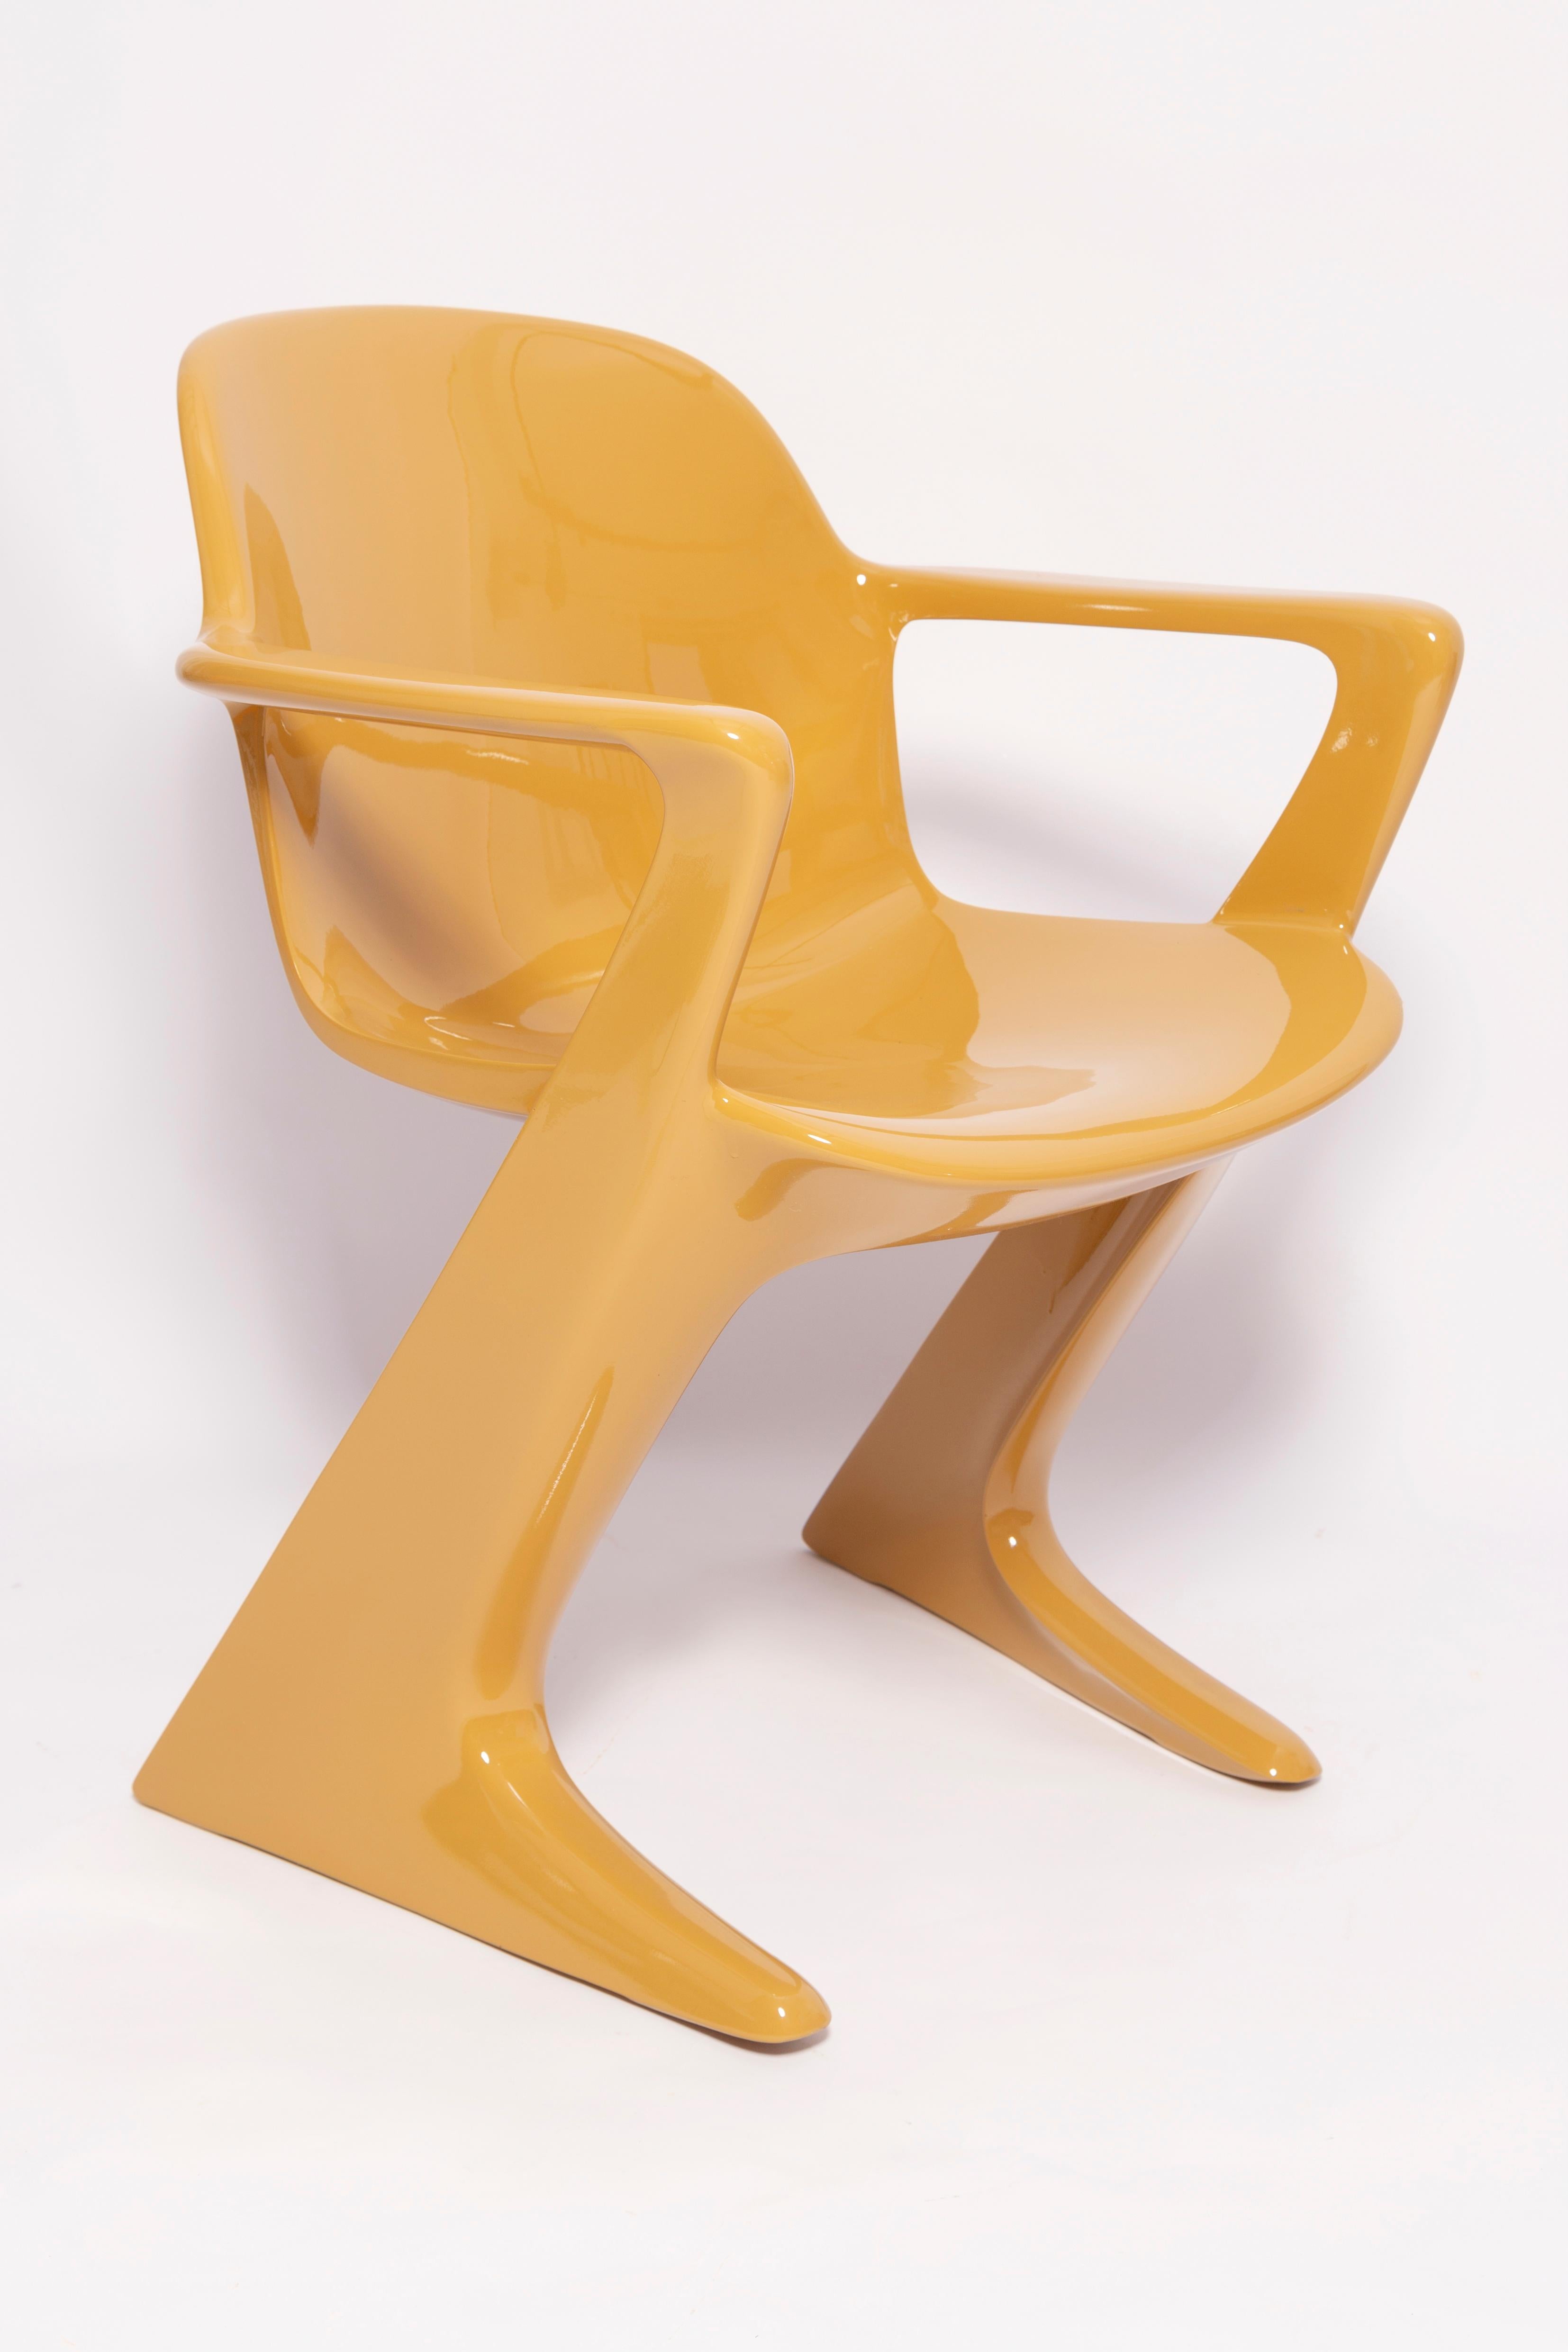 Ce modèle est appelé Z-chair. Conçue en 1968 en RDA par Ernst Moeckl et Siegfried Mehl, version allemande de la chaise Panton. Également appelée chaise kangourou ou chaise variopur. Produit dans l'est de l'Allemagne.

La z.stuhl, conçue par Ernst